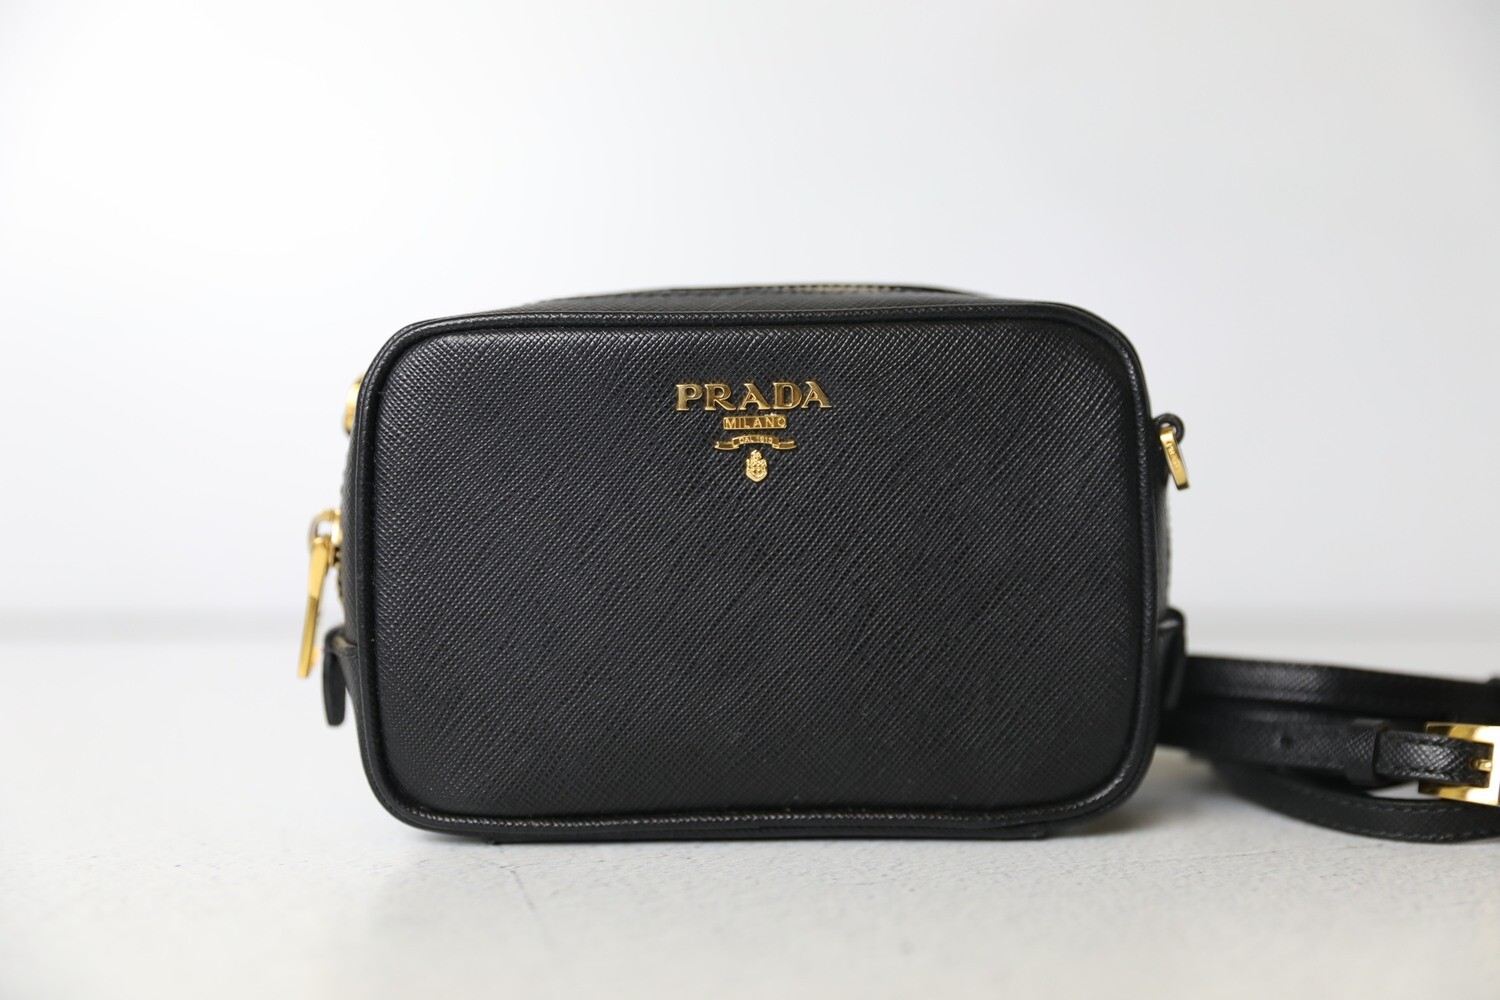 Prada Mini Camera Bag, Black Saffiano Leather, Preowned in Dustbag